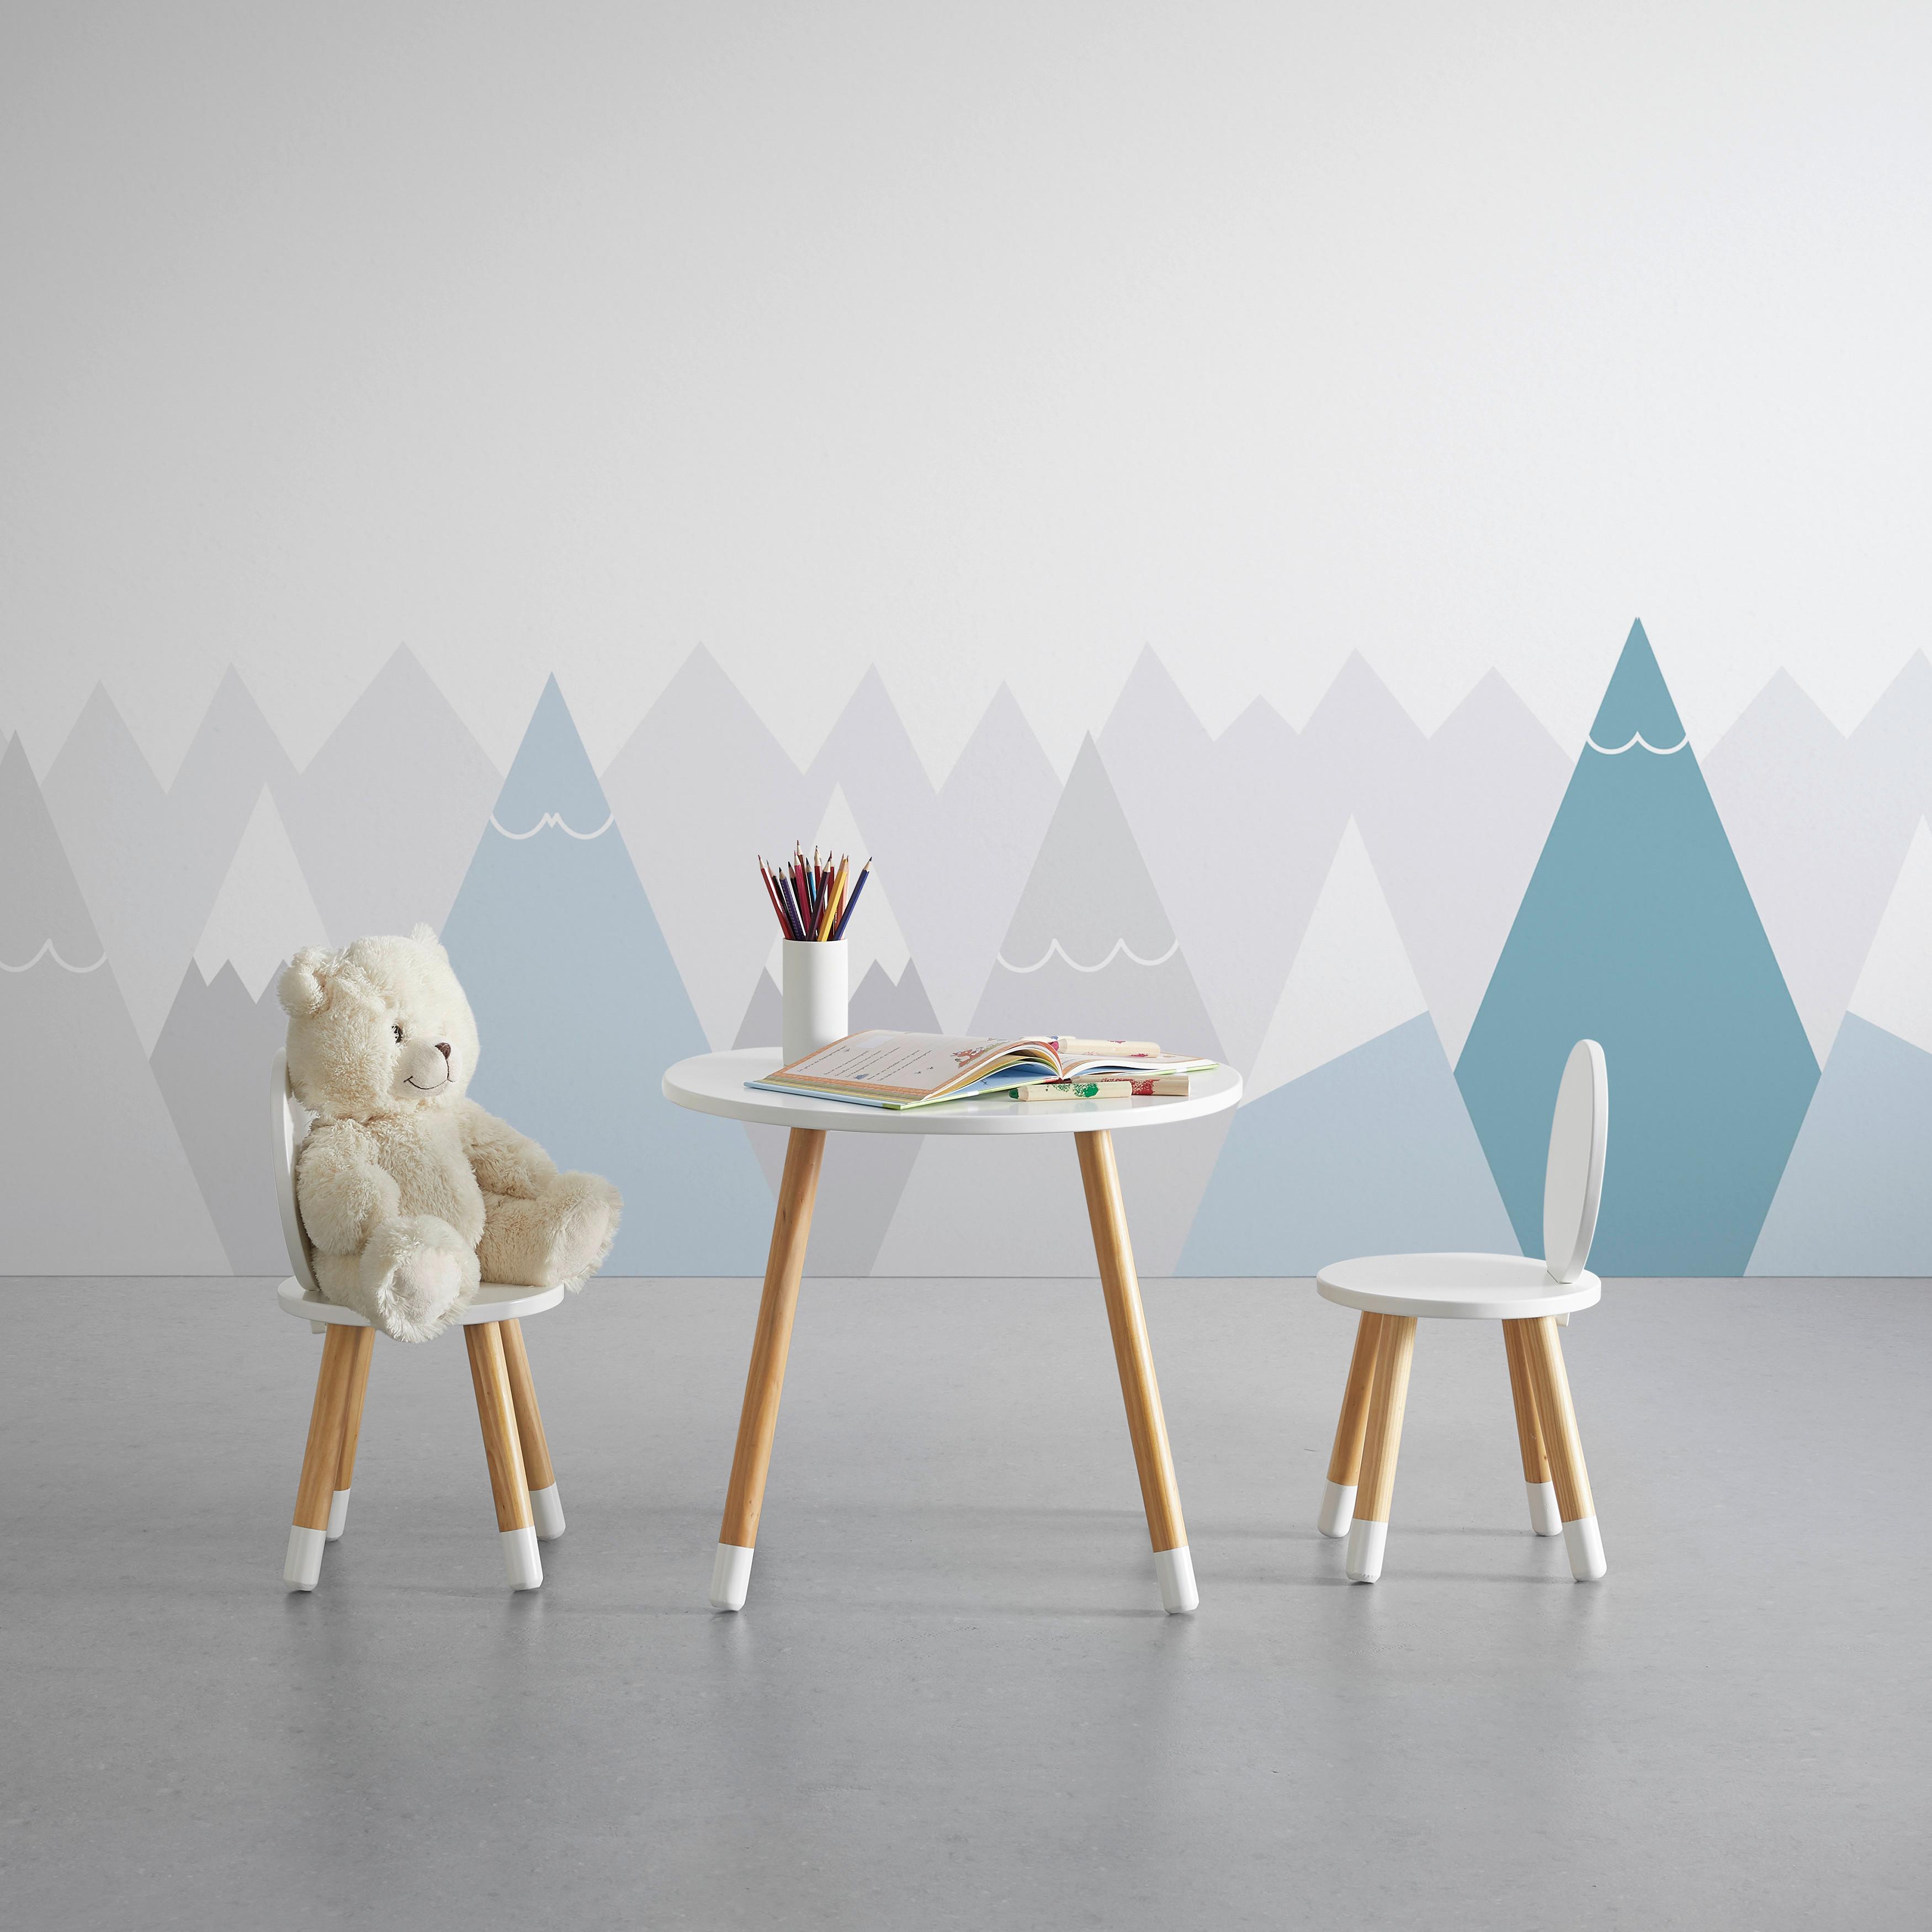 Dětský Stůl Leni - bílá/barvy pinie, Moderní, dřevo (55,9/49,5cm) - Modern Living